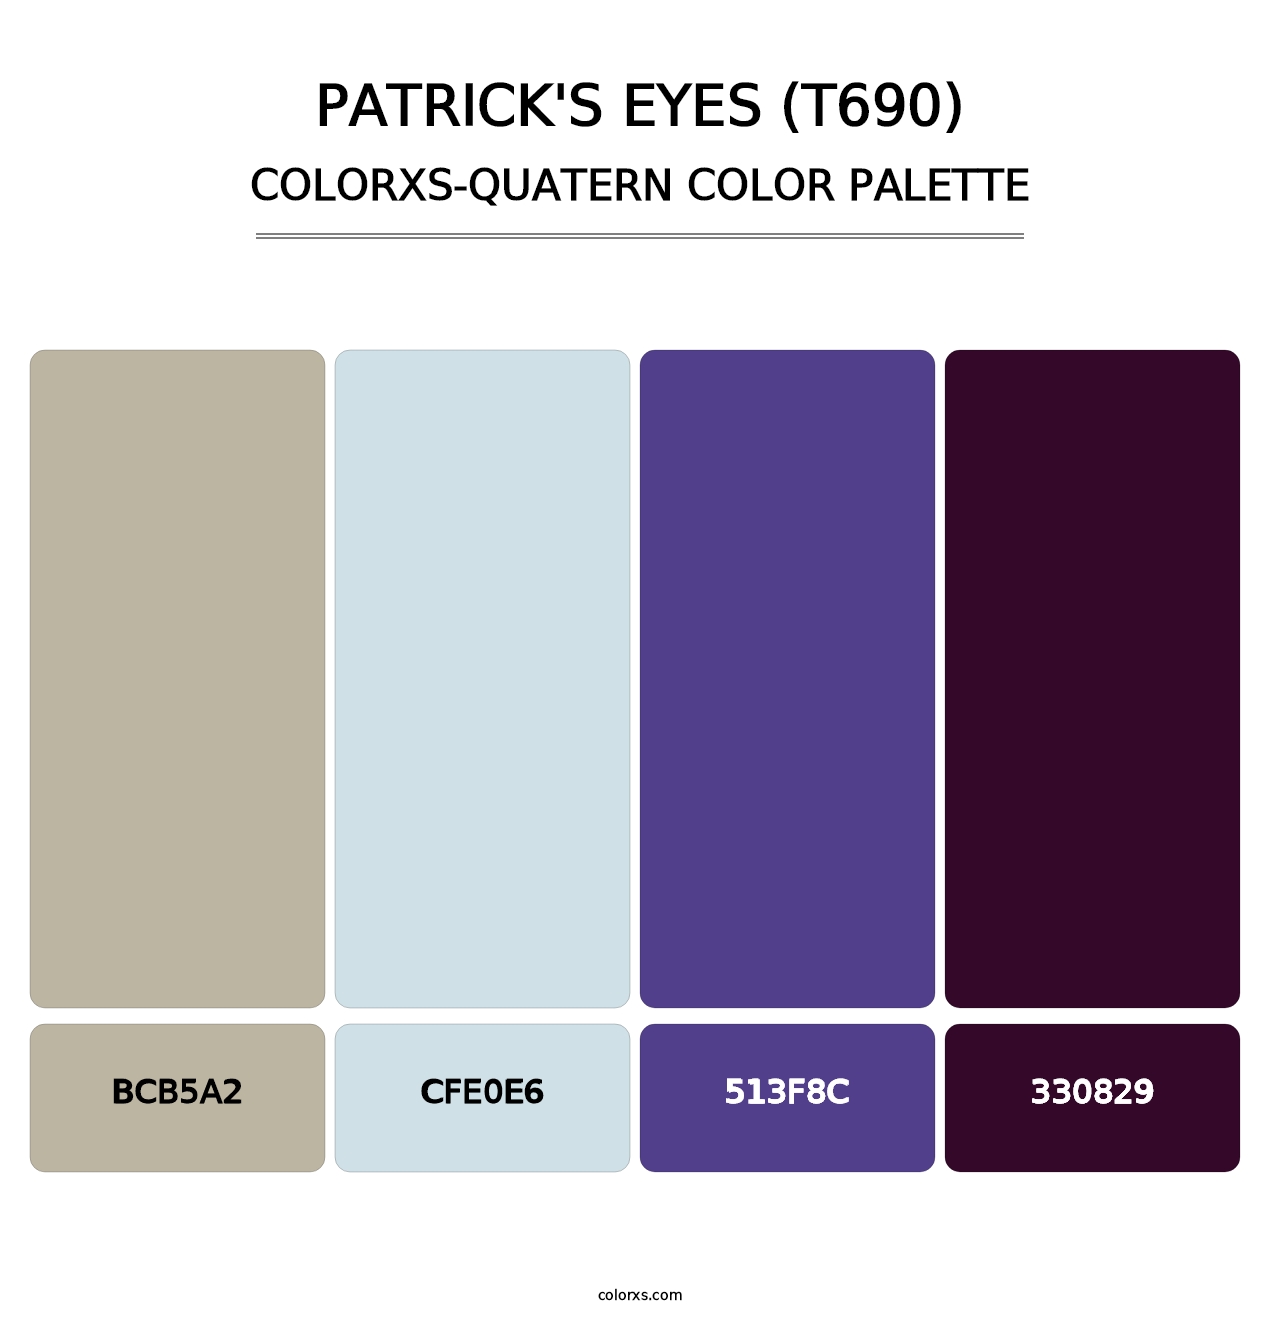 Patrick's Eyes (T690) - Colorxs Quatern Palette